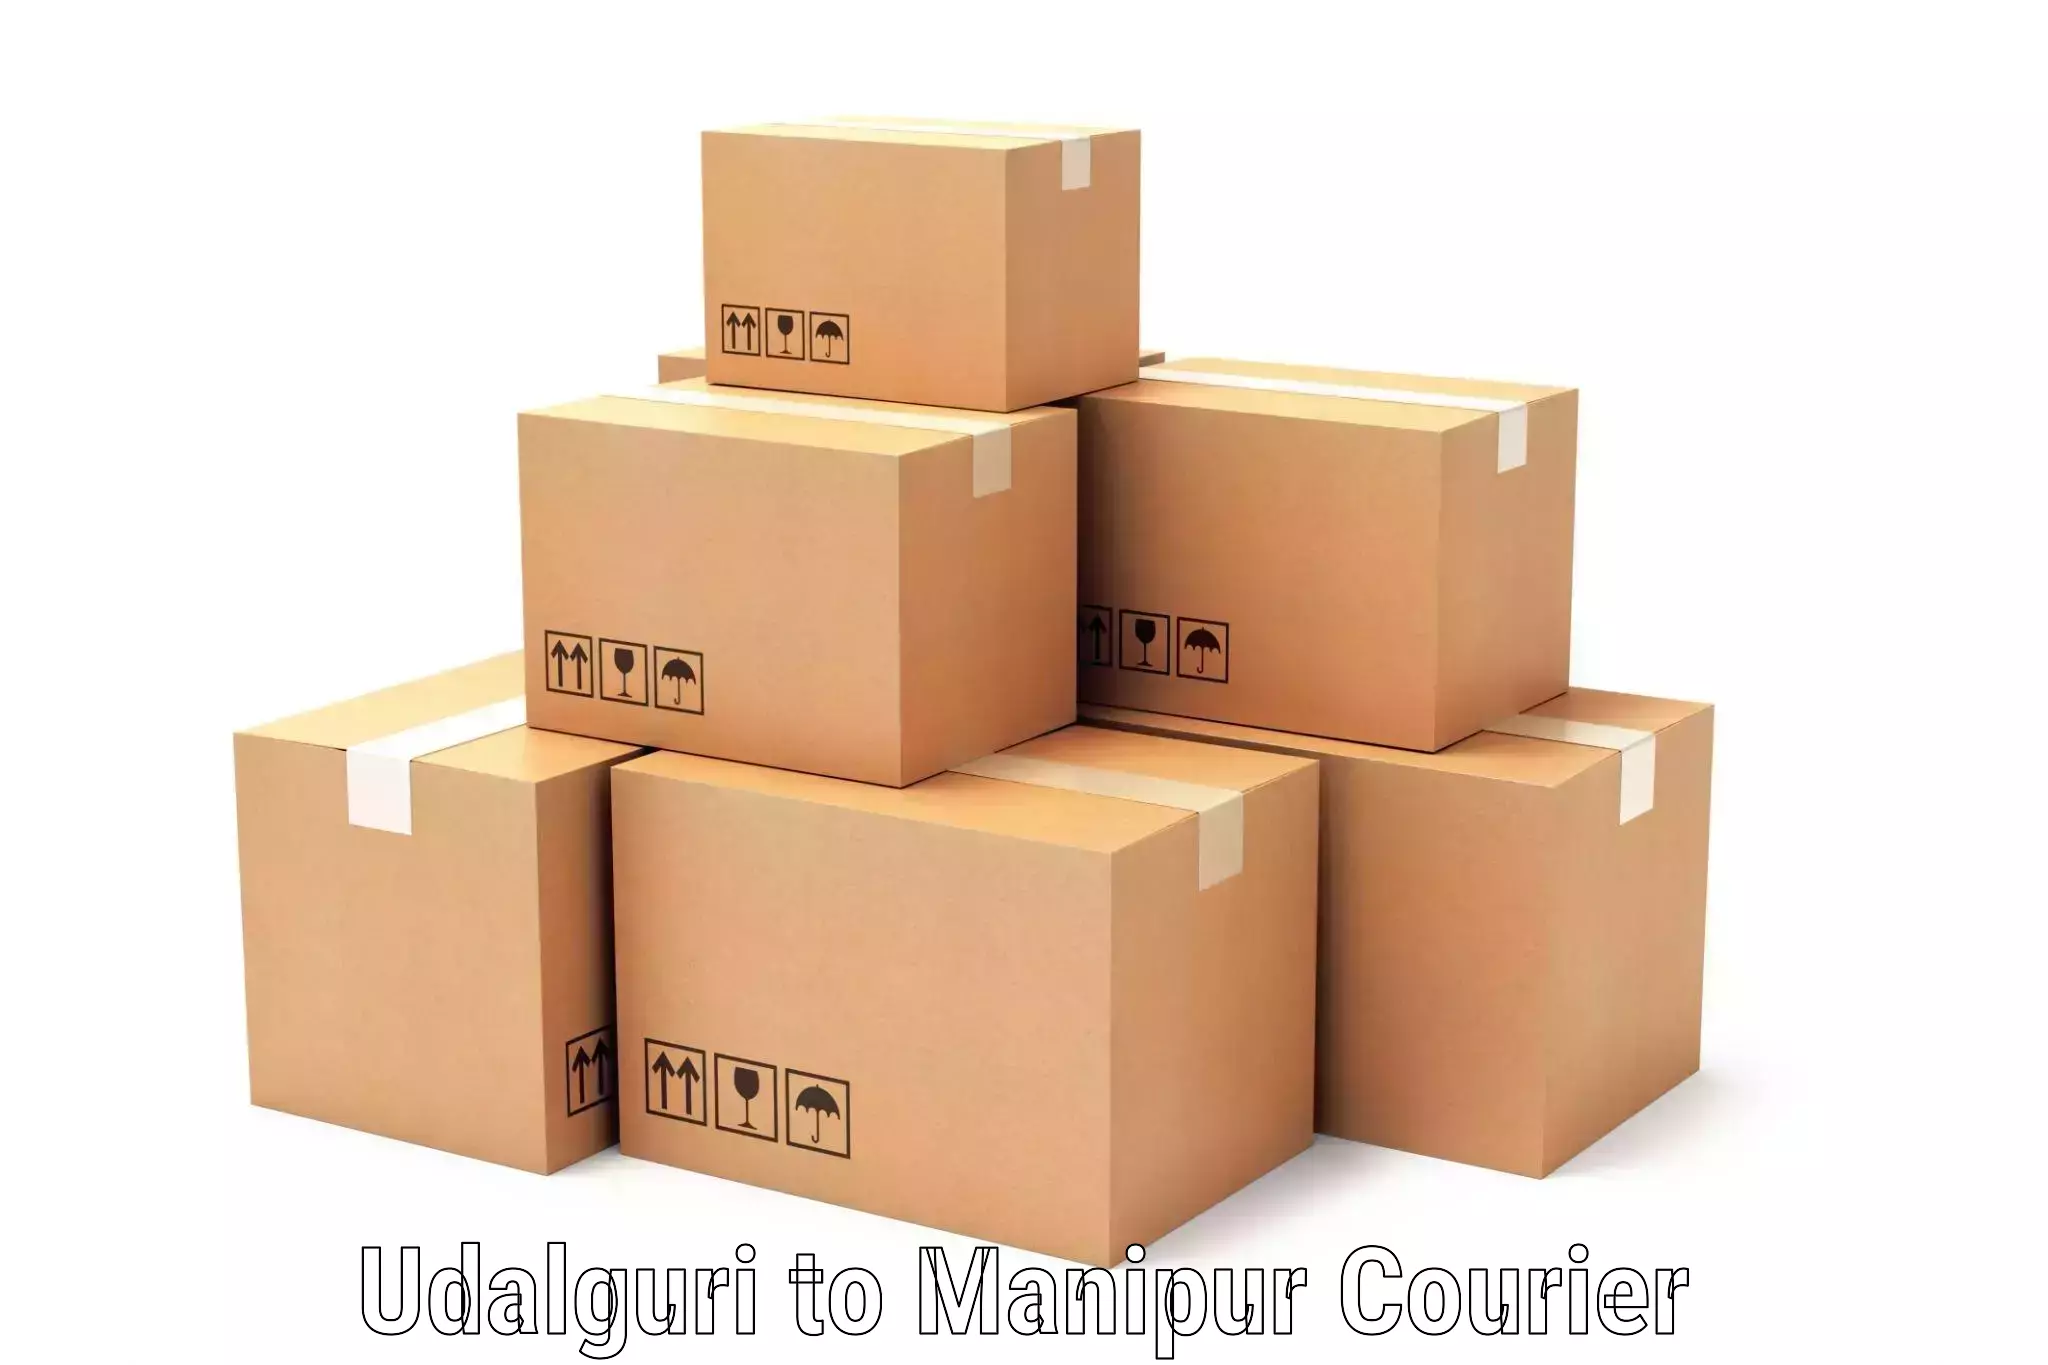 Cost-effective courier options Udalguri to Thoubal